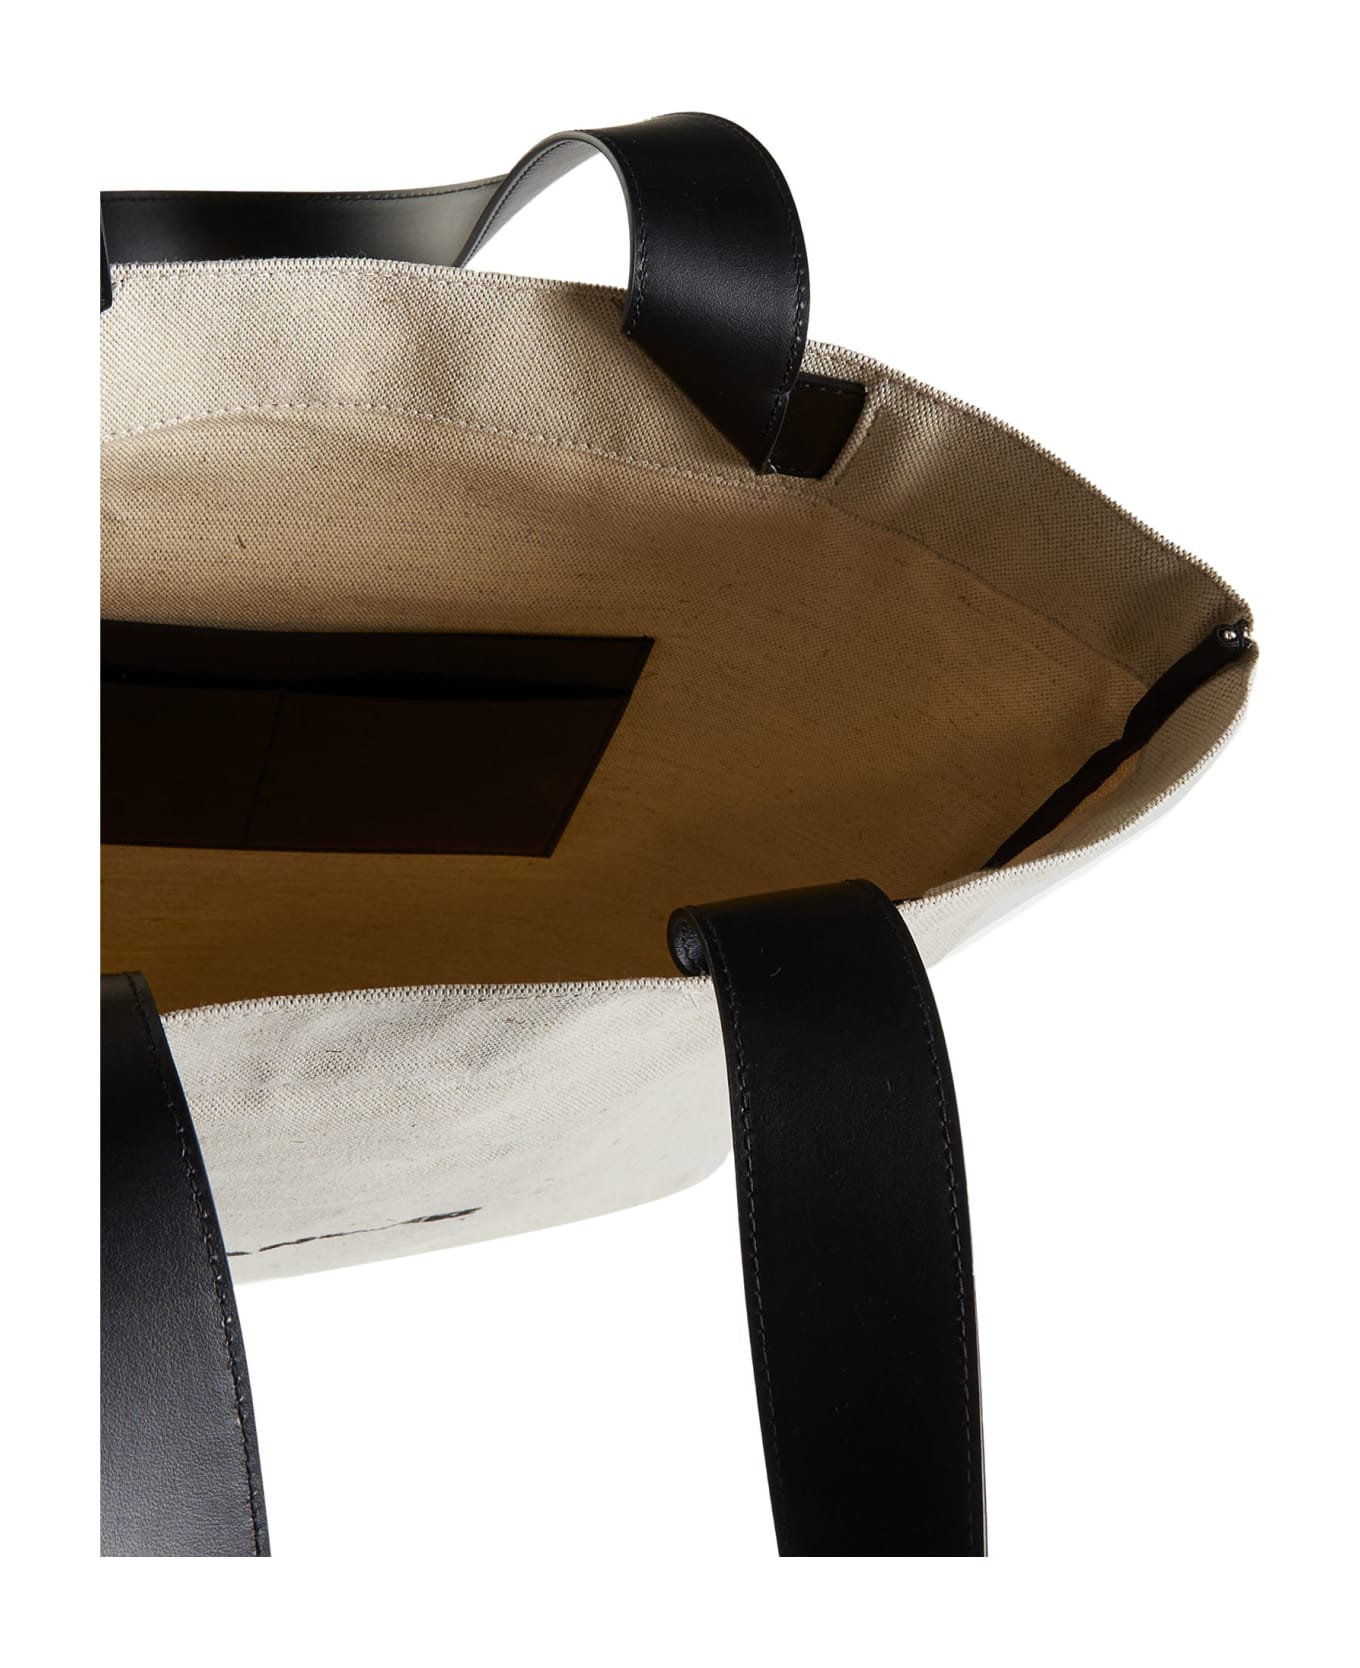 Jil Sander Shoulder Bag - Natural